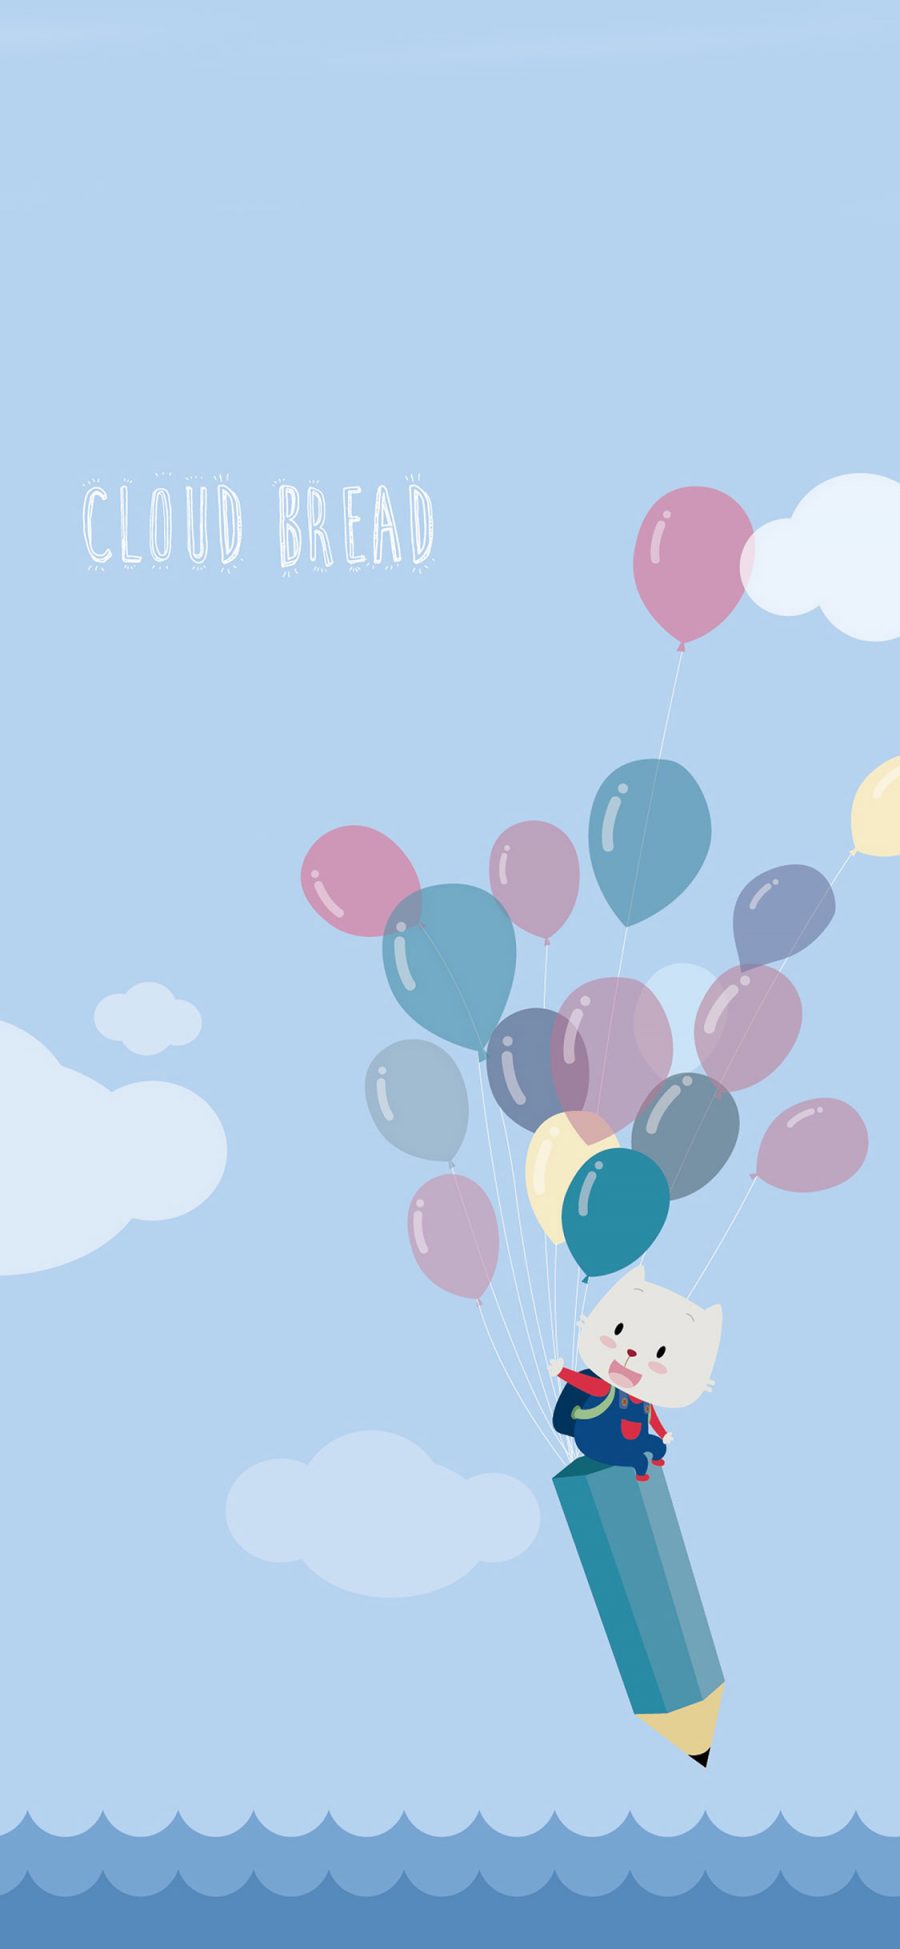 [2436×1125]云彩面包 动漫 cloud bread 气球 创意 猫咪 苹果手机动漫壁纸图片